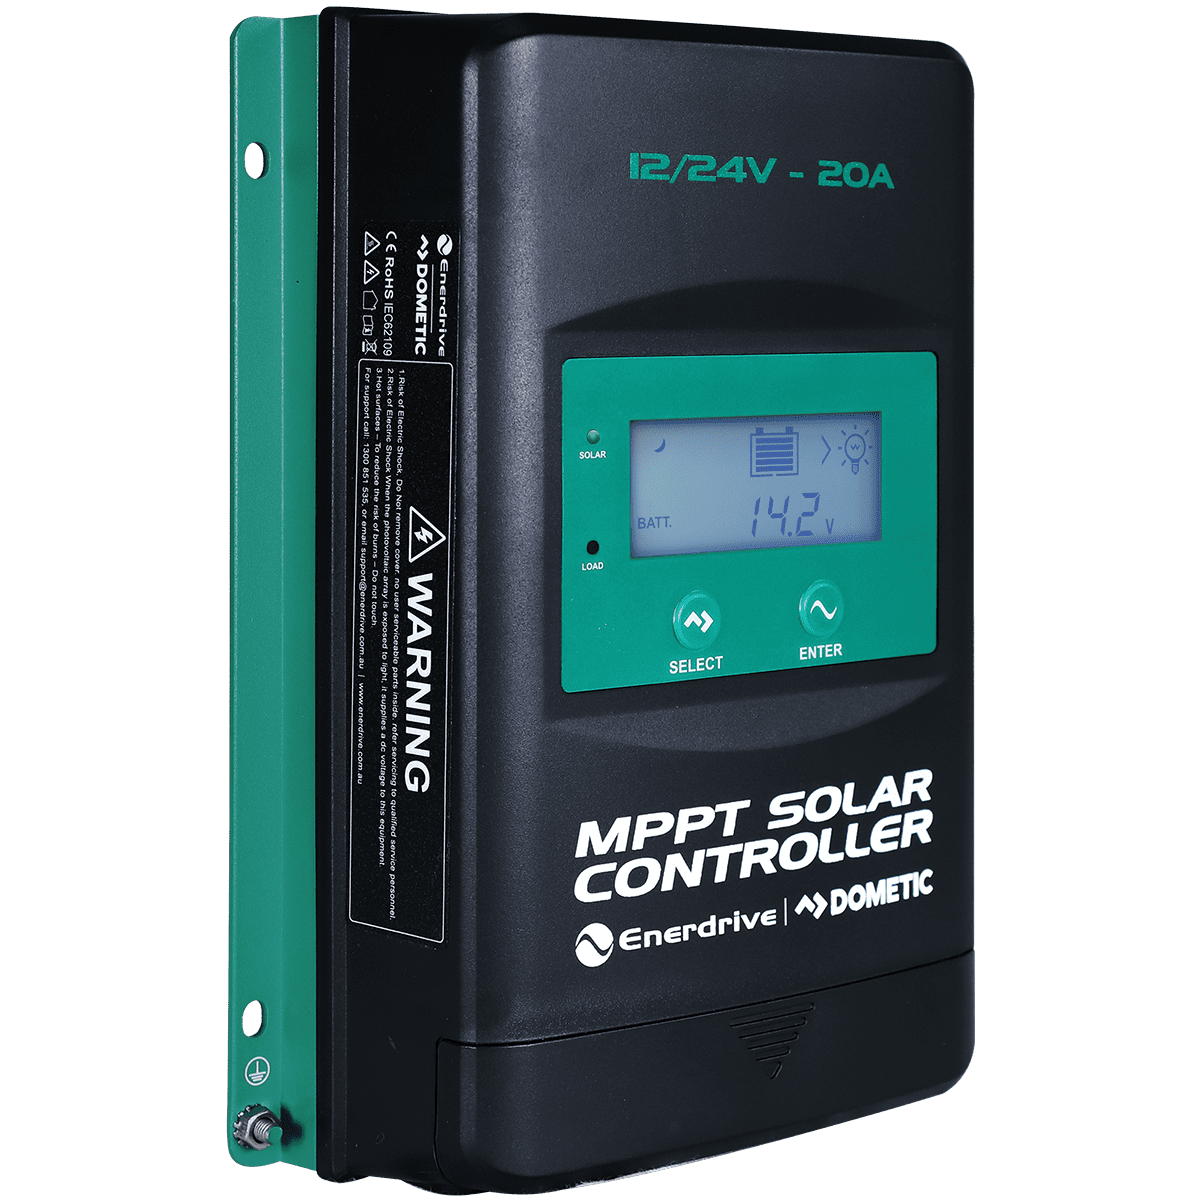 Enerdrive Mppt Solar Controller W/Display - 20Amp 12/24V EN43520